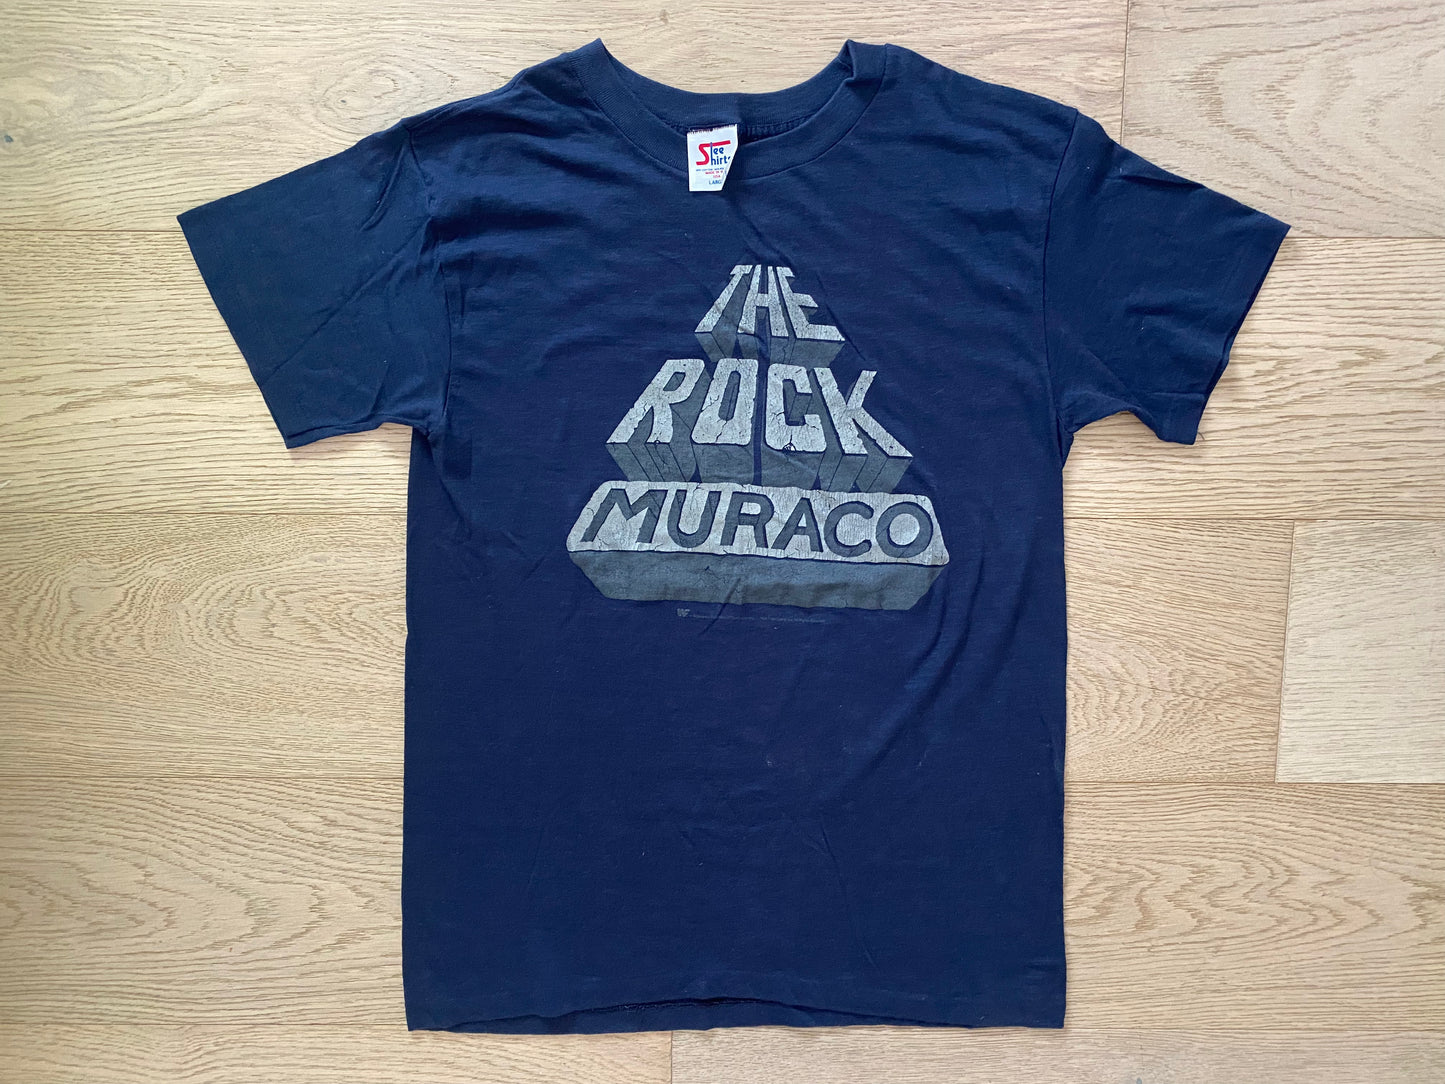 1987 WWF “The Rock” Don Muraco shirt